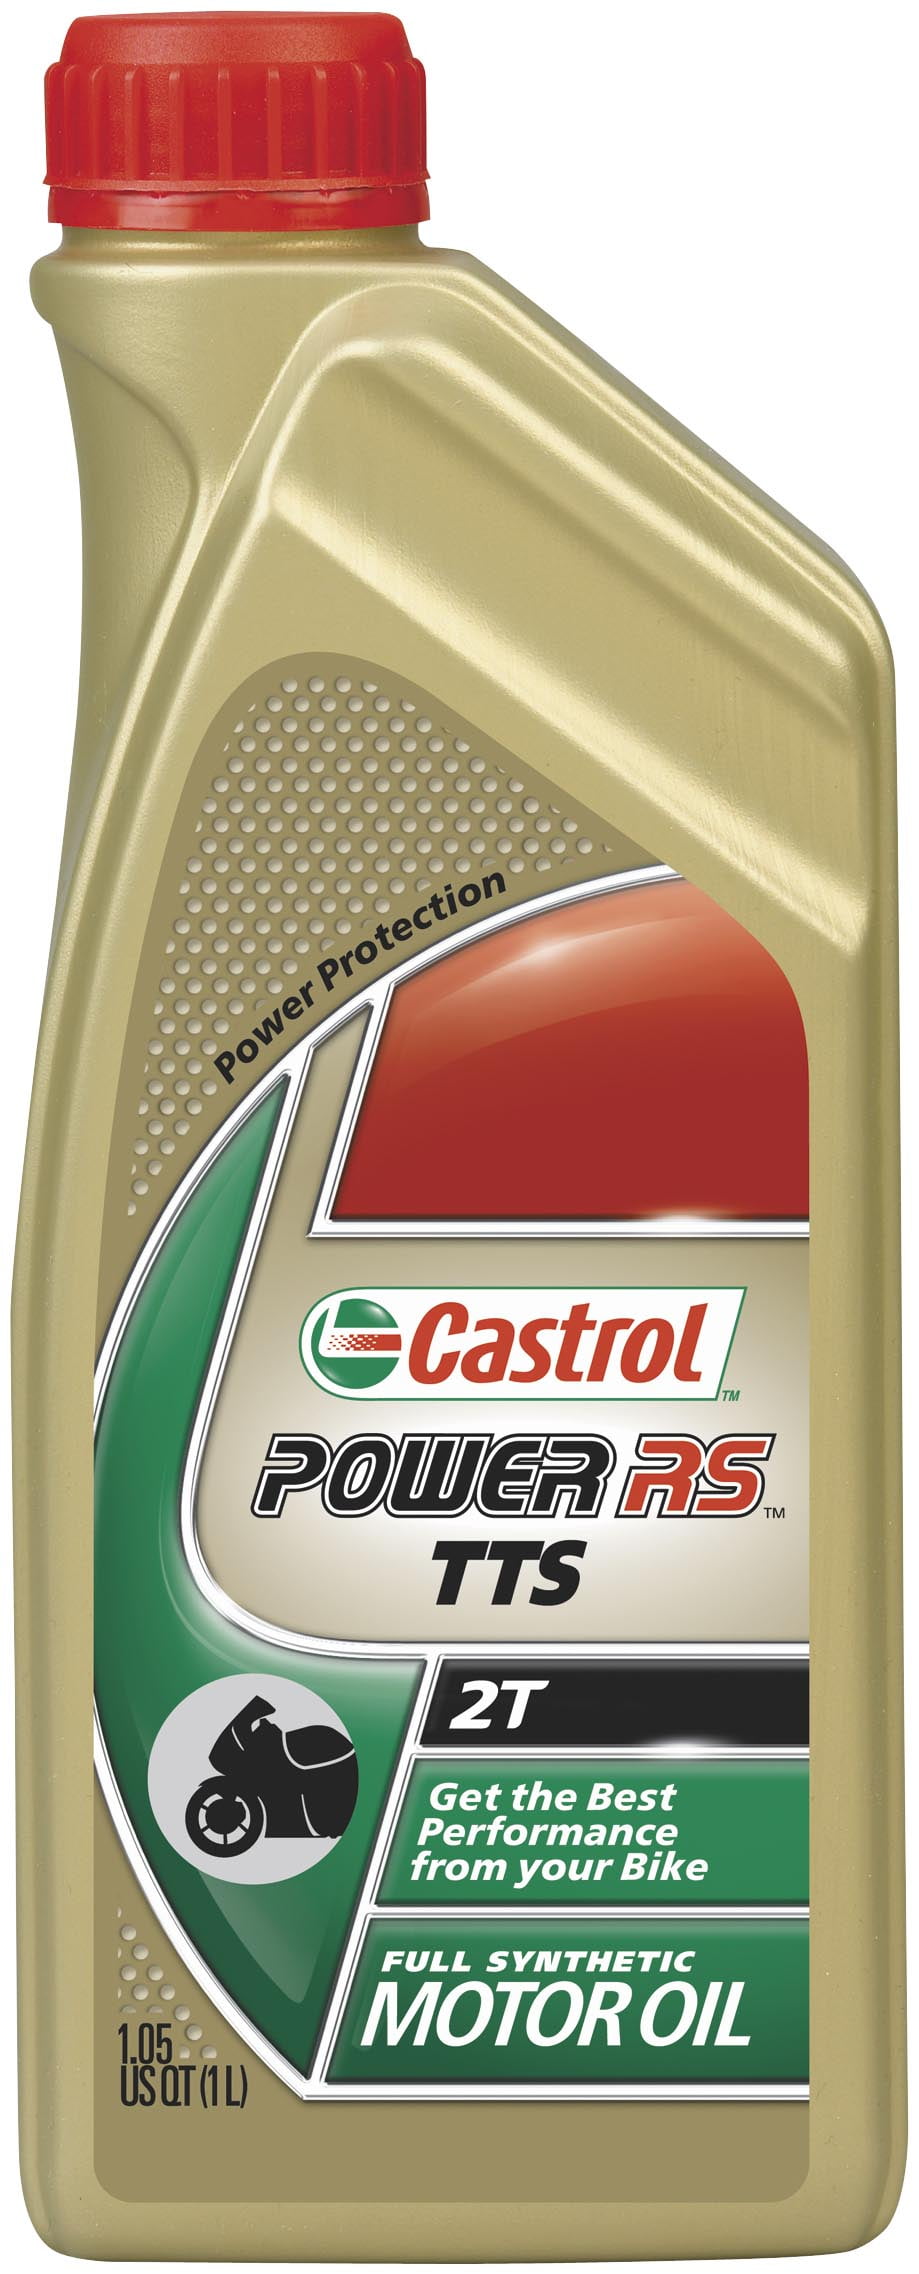 Castrol Power 1 Racing 2T Motorrad Motoröl 1l - 2-Takt